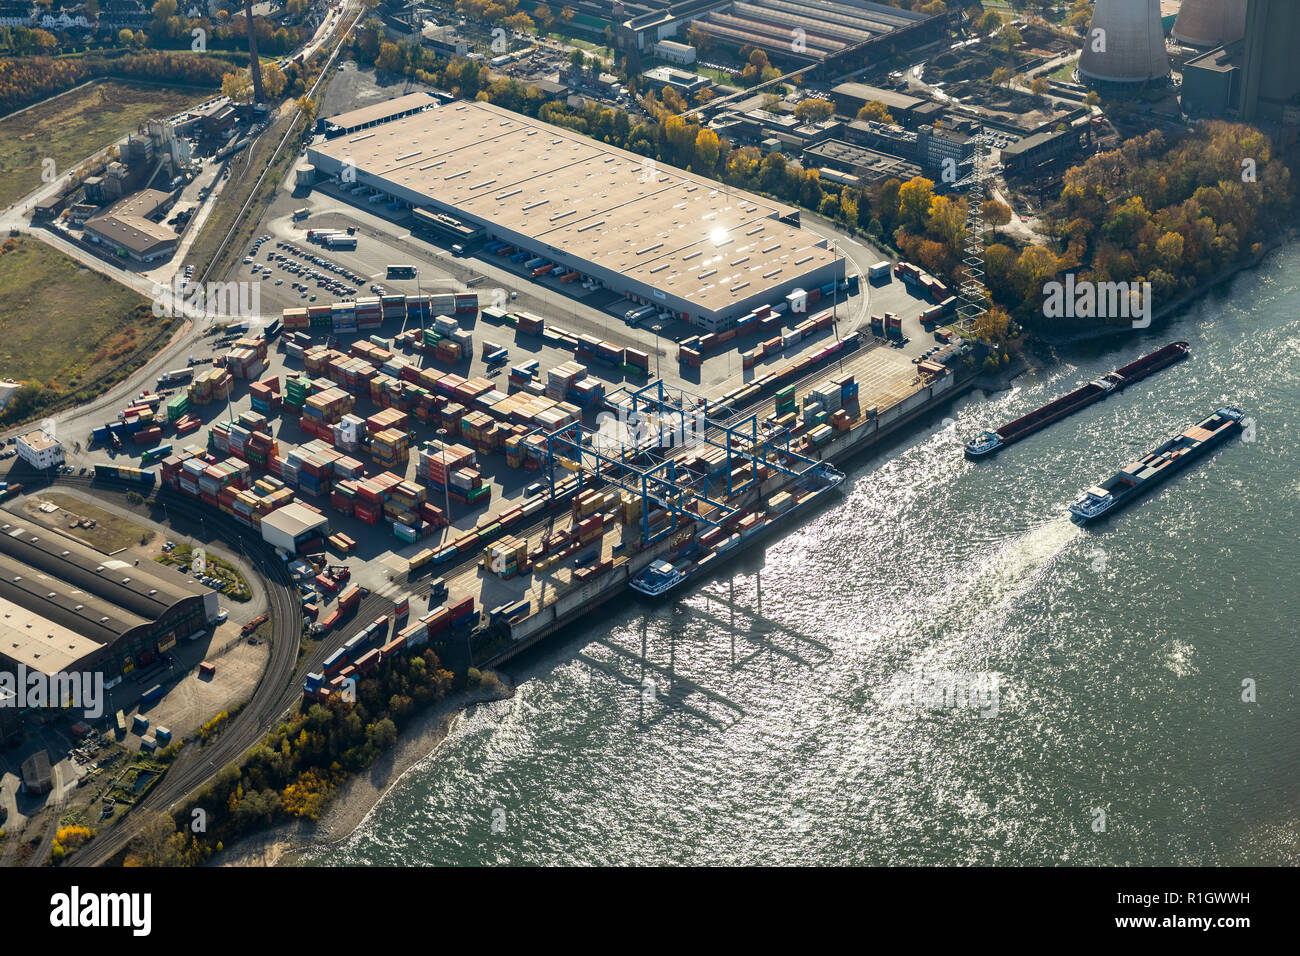 Luftaufnahme, logport II mit Containern, Rhein, Container Terminal, Containerverladung, Logistikstandort duisport Firma, Angerhausen, Duisburg, R Stockfoto